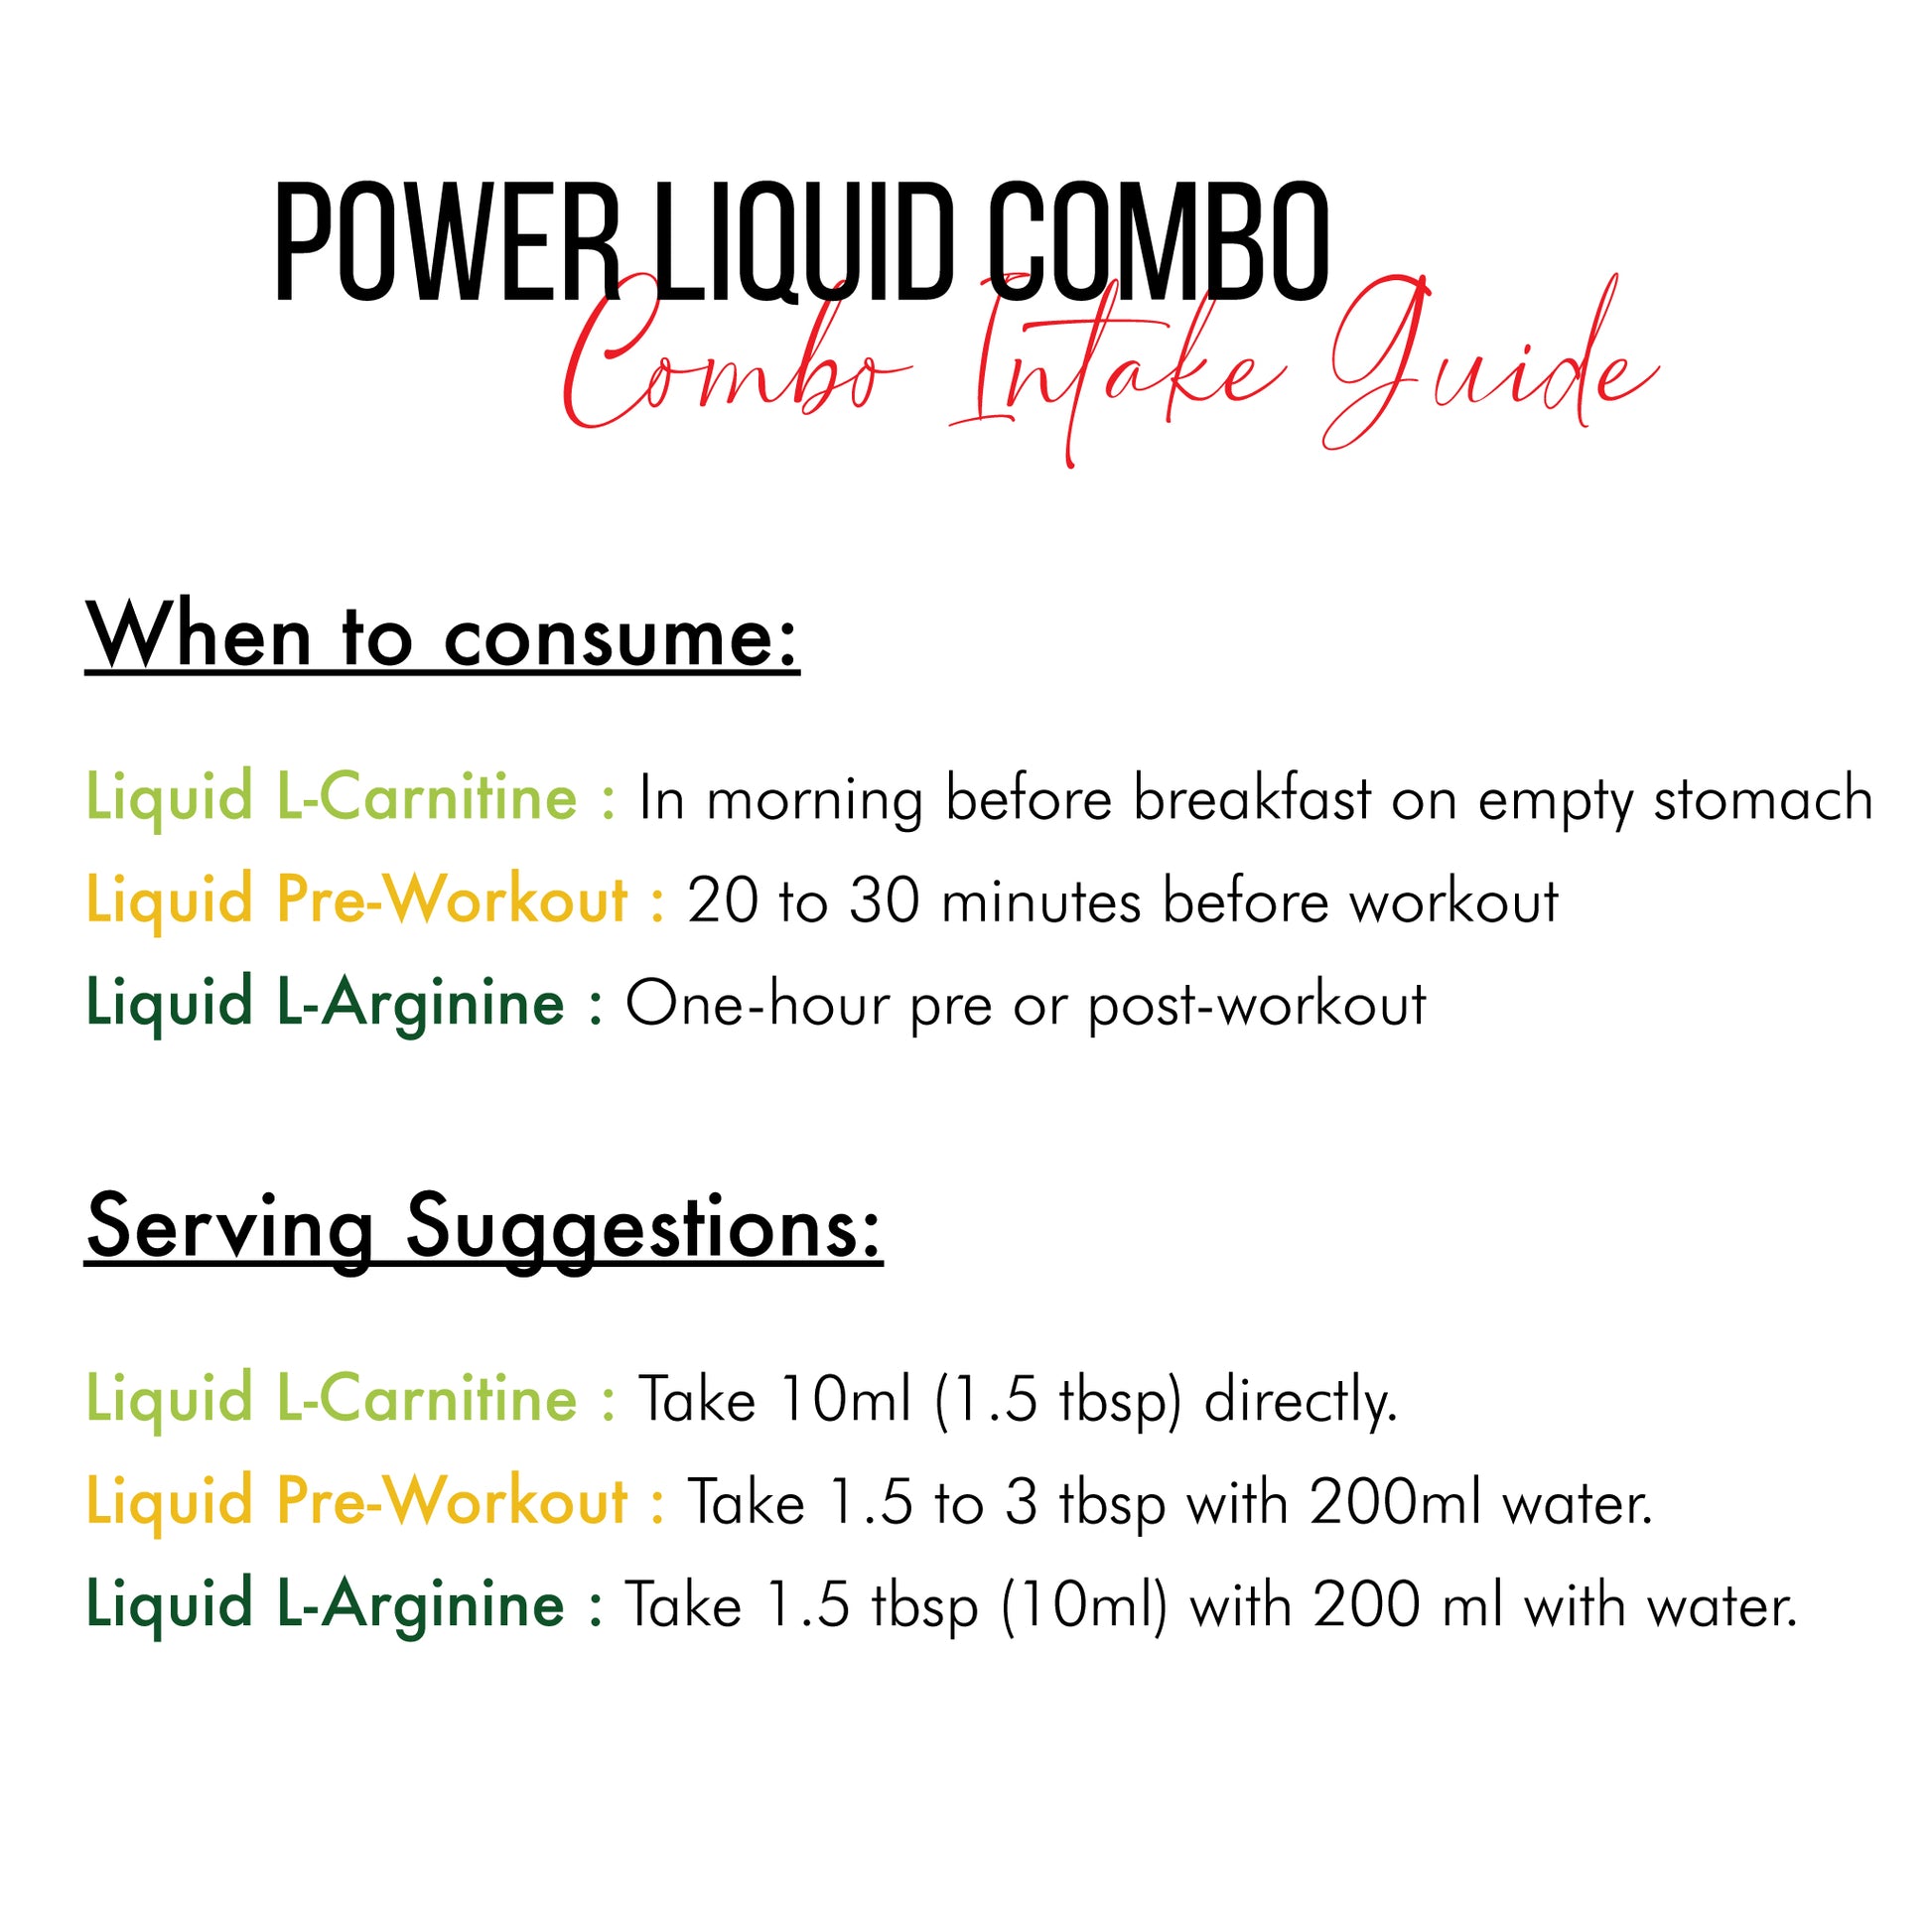 Power Liquid Combo - Nutrabox India